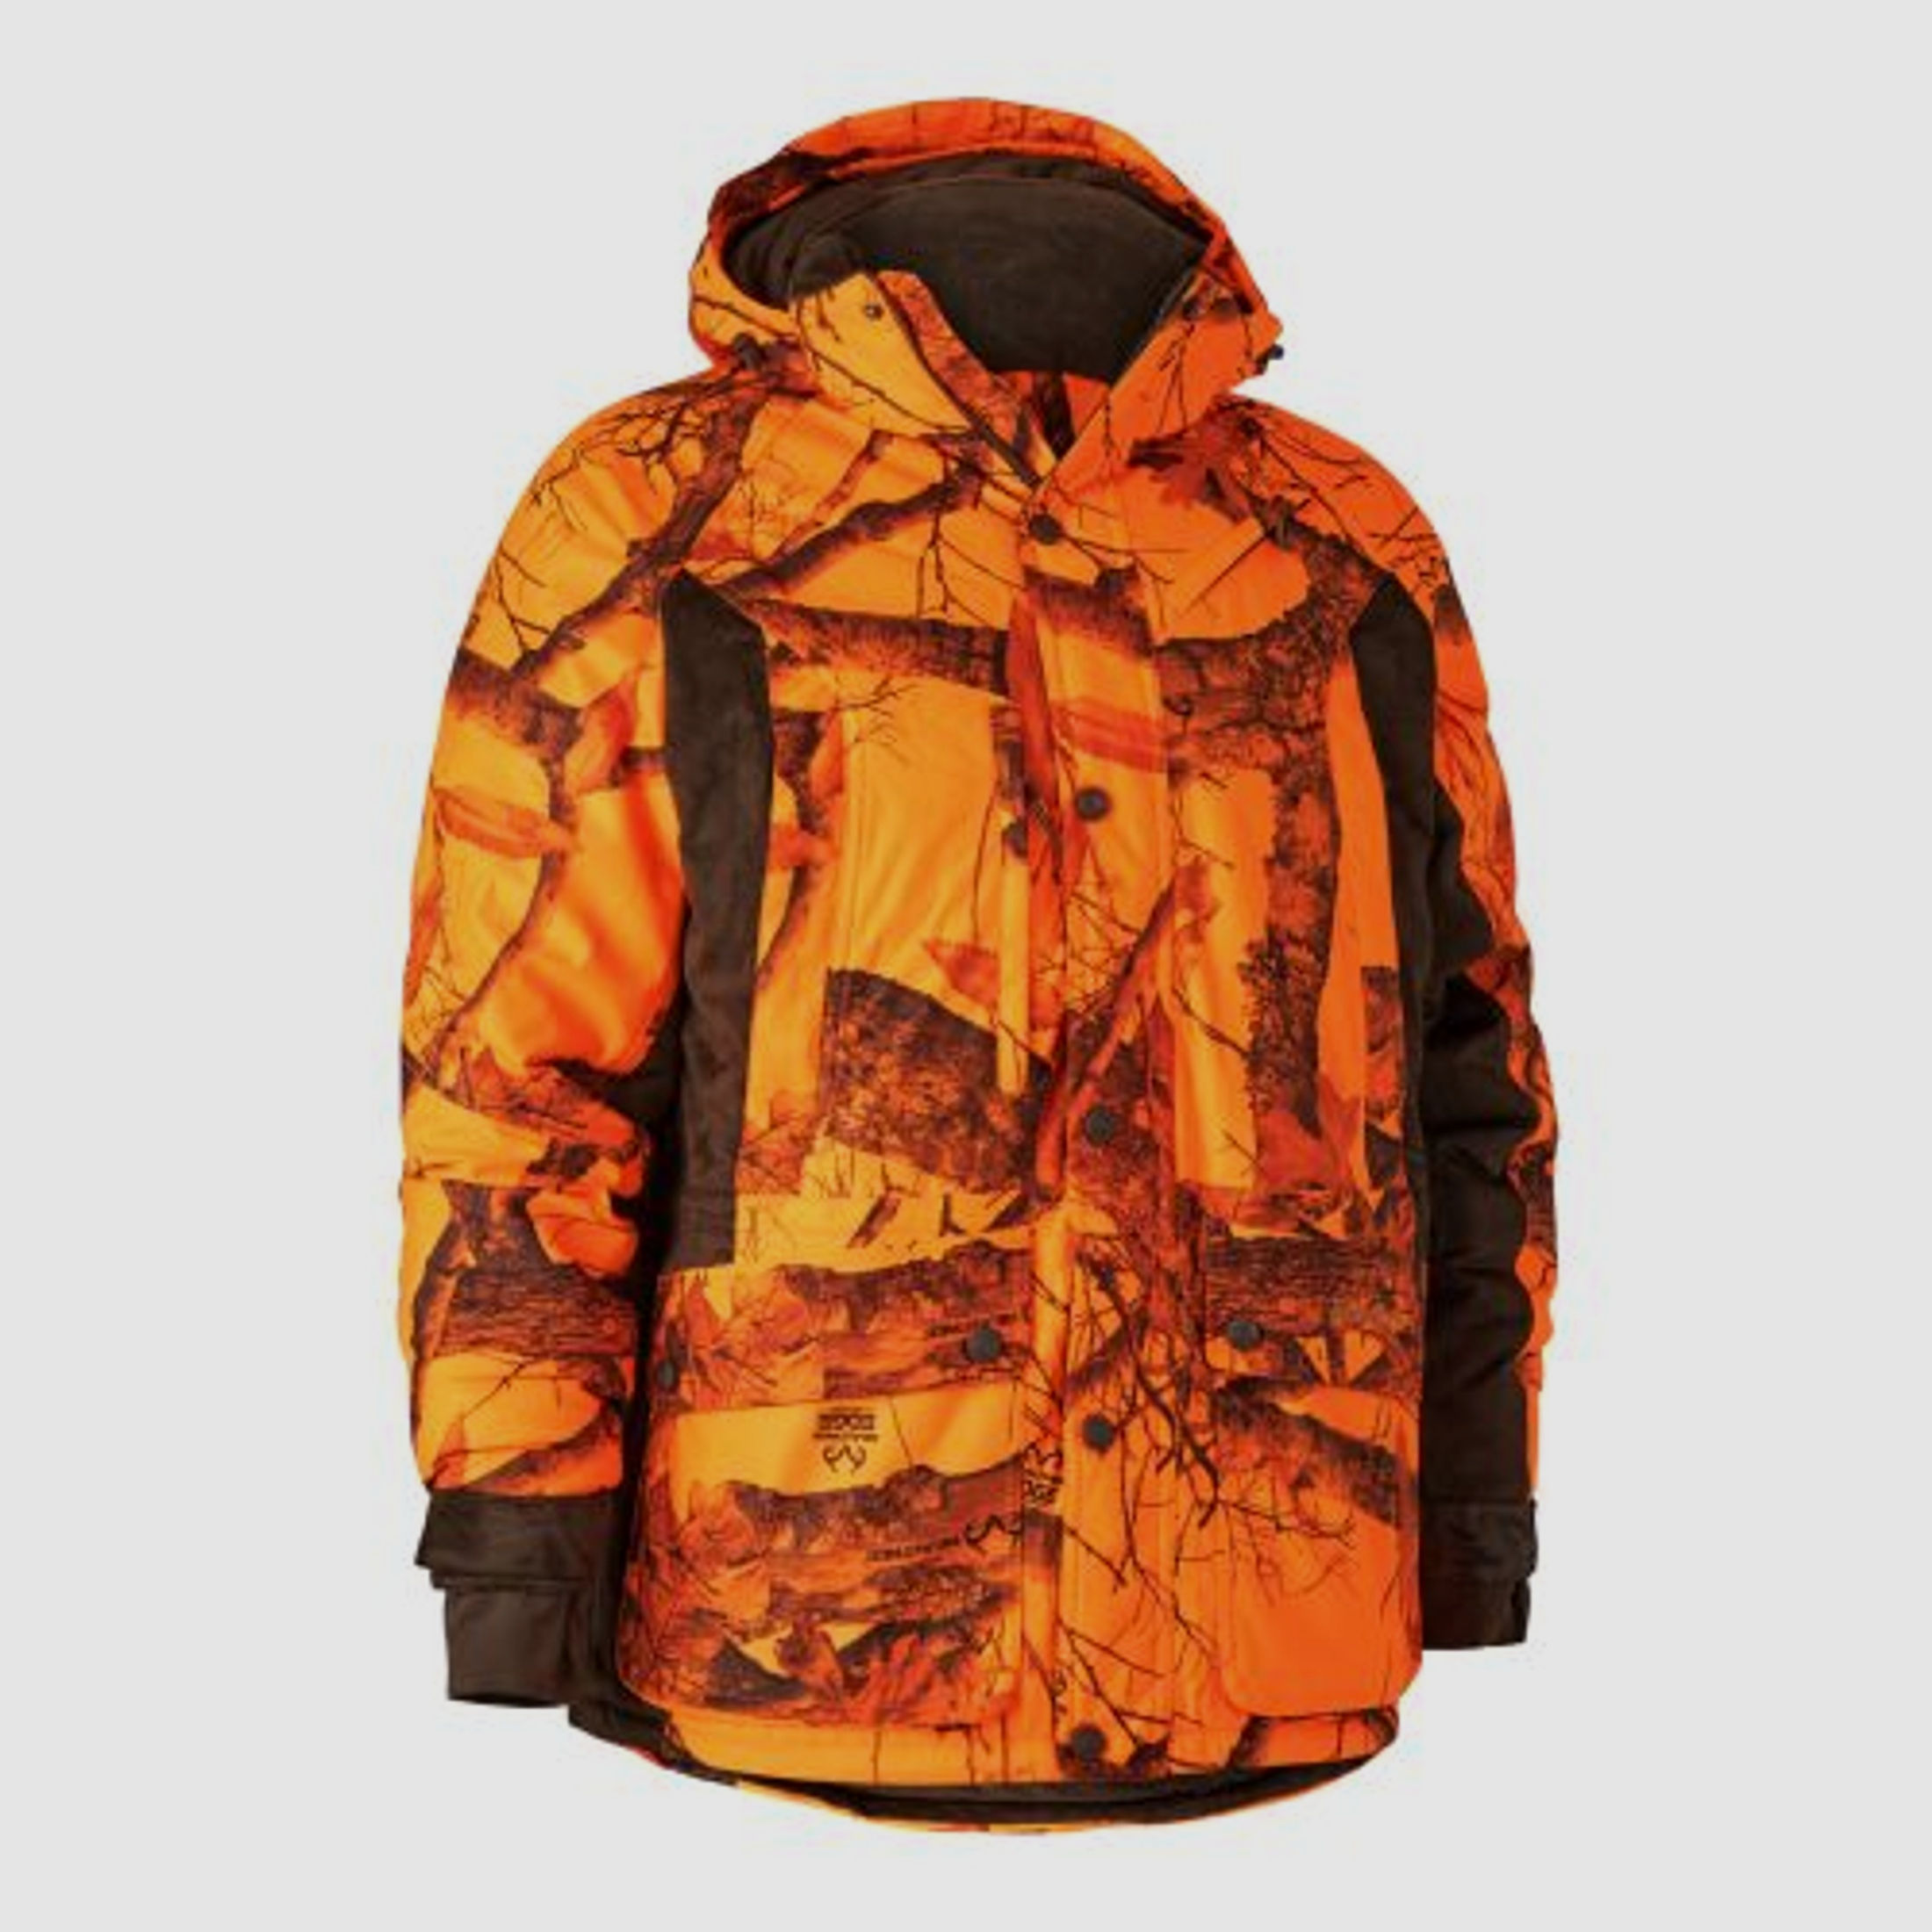 Deerhunter Herren Jacke Explore Winter Orange Camouflage 56